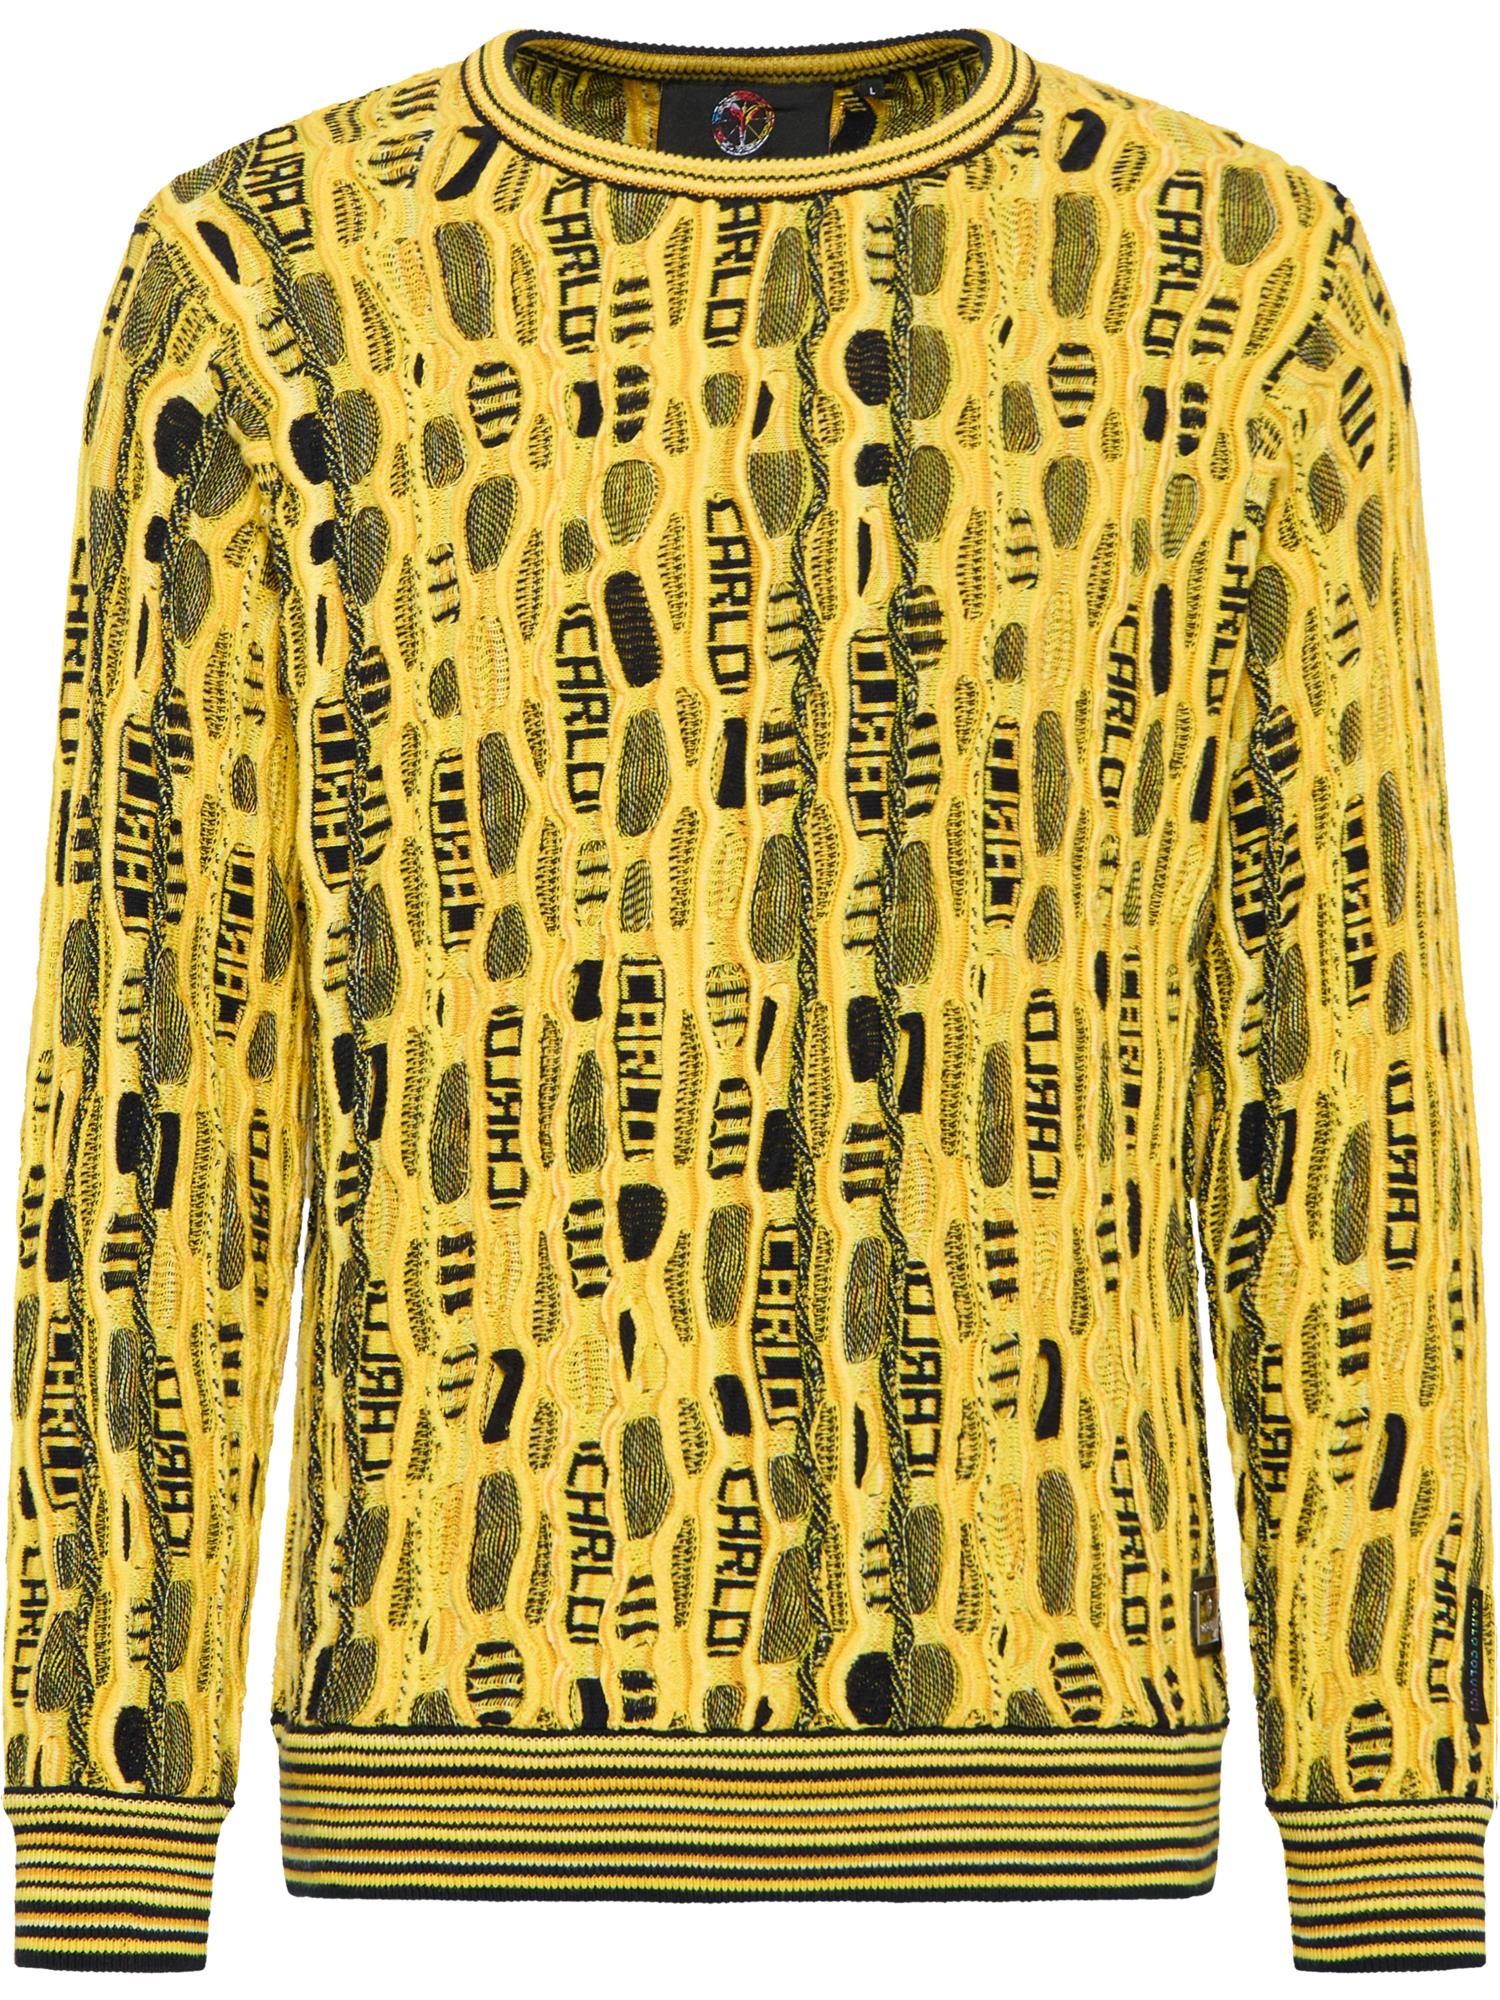 Пуловер Carlo Colucci Rundhals De Curtis, желтый пуловер carlo colucci rundhals casna красный